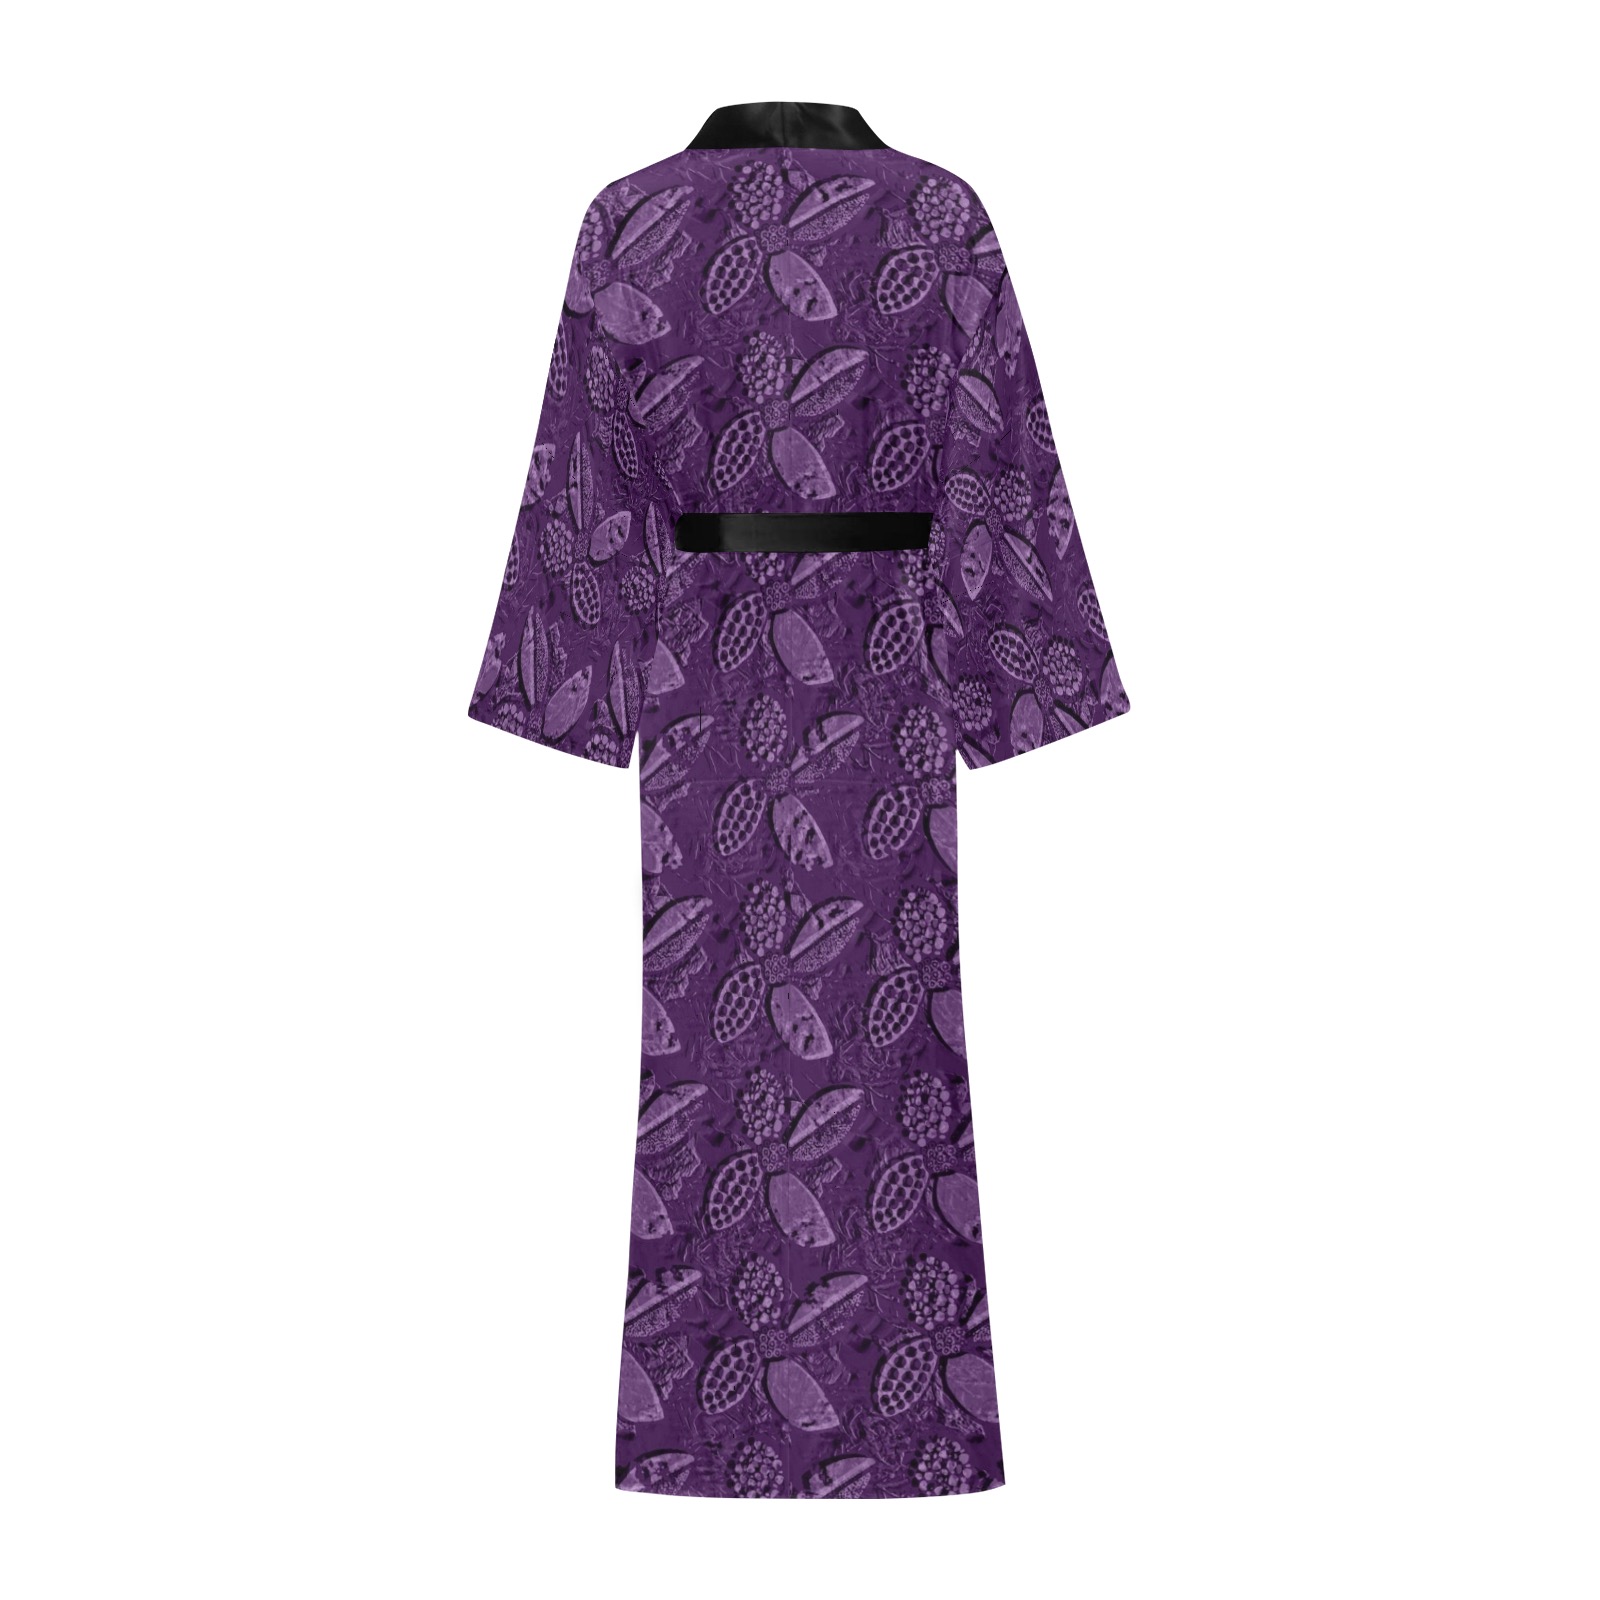 Floral pattern Long Kimono Robe